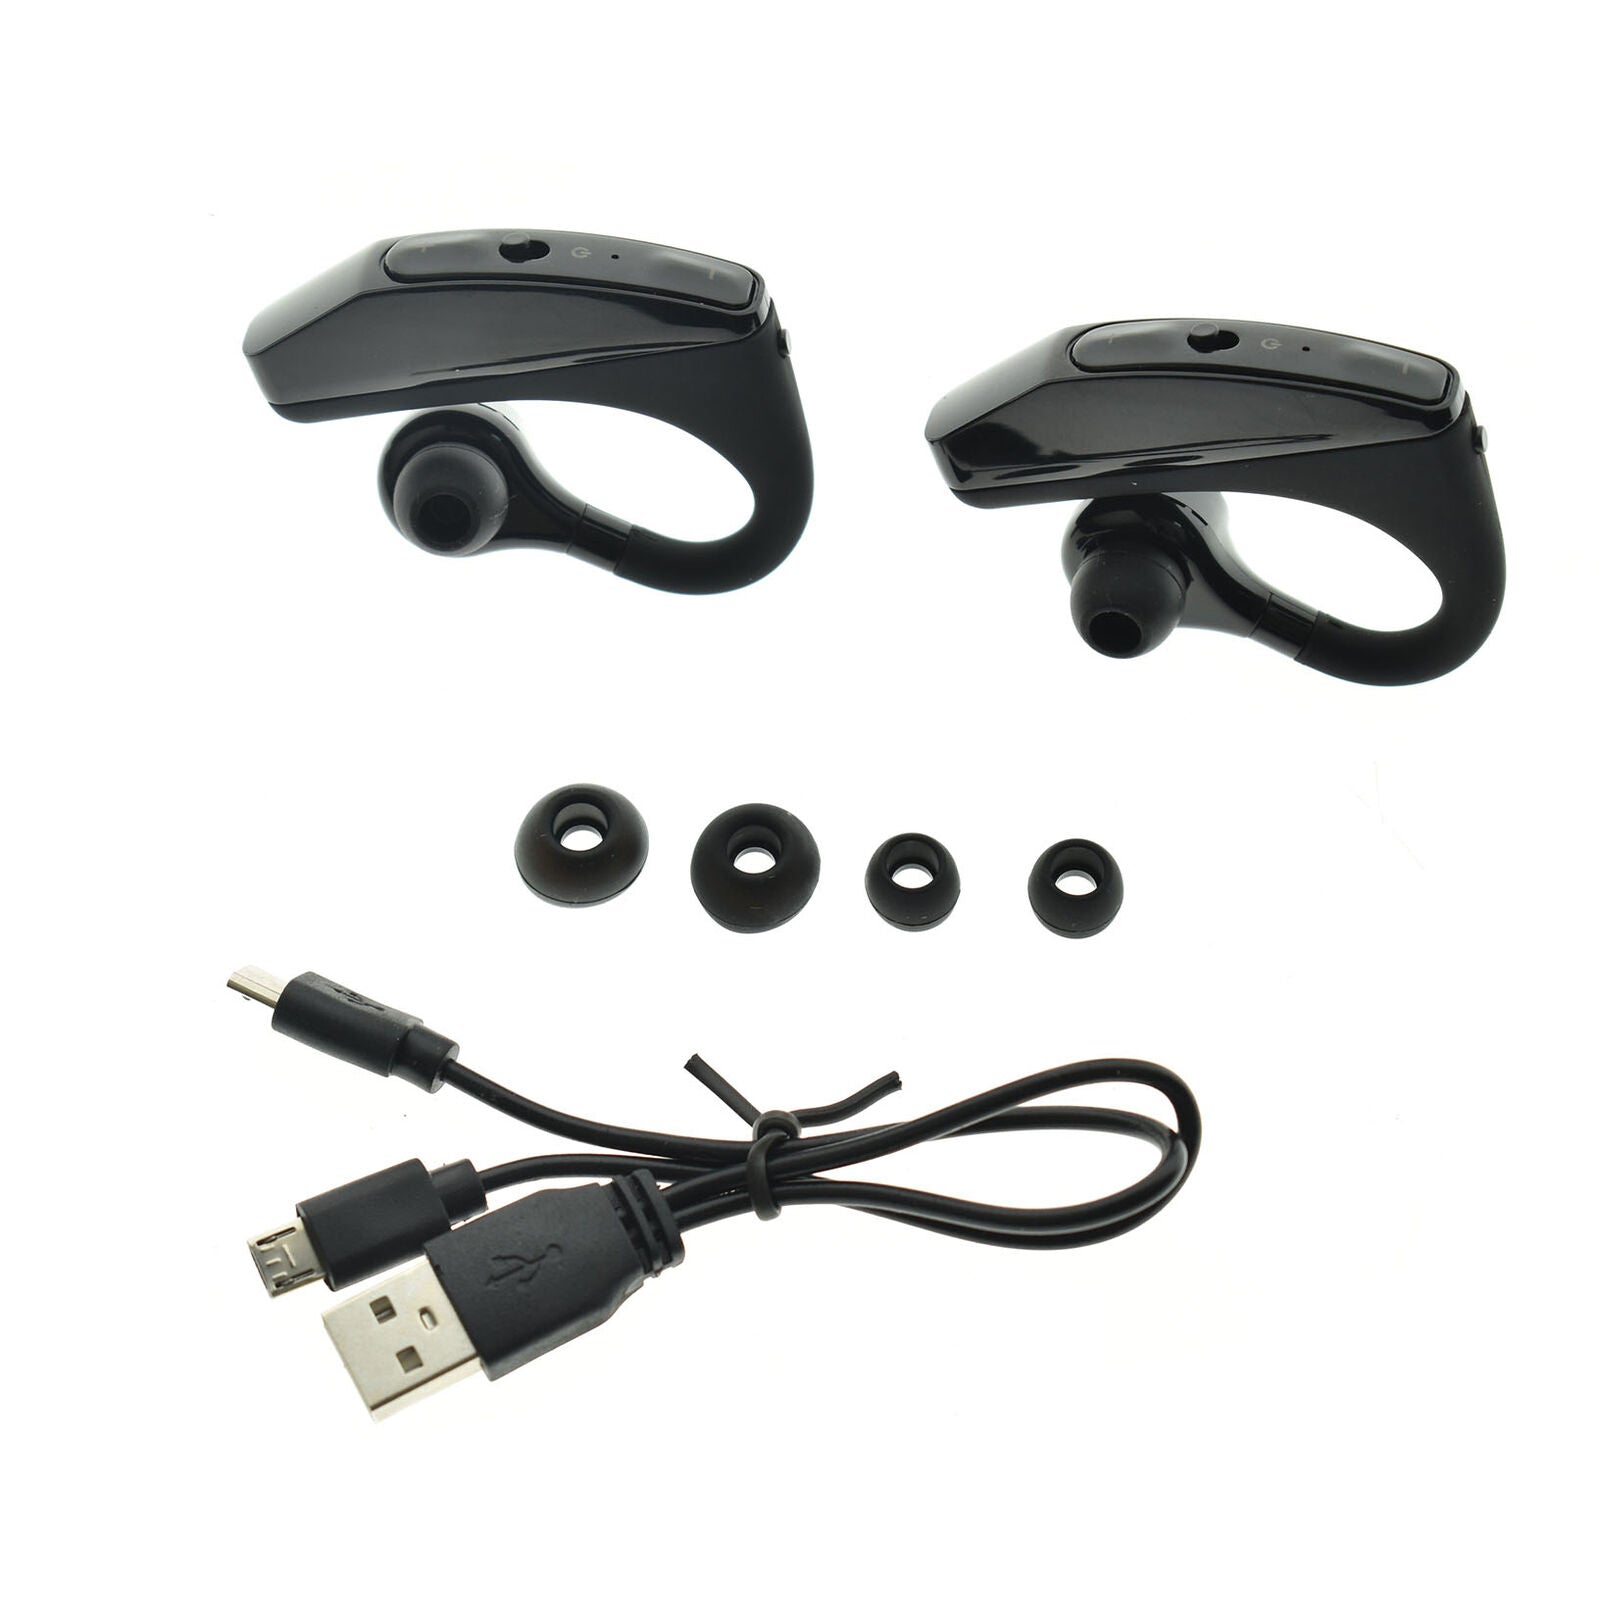 Wireless Earbuds Bluetooth 5.0 Earphones Stereo Bass Ear Hook Headset